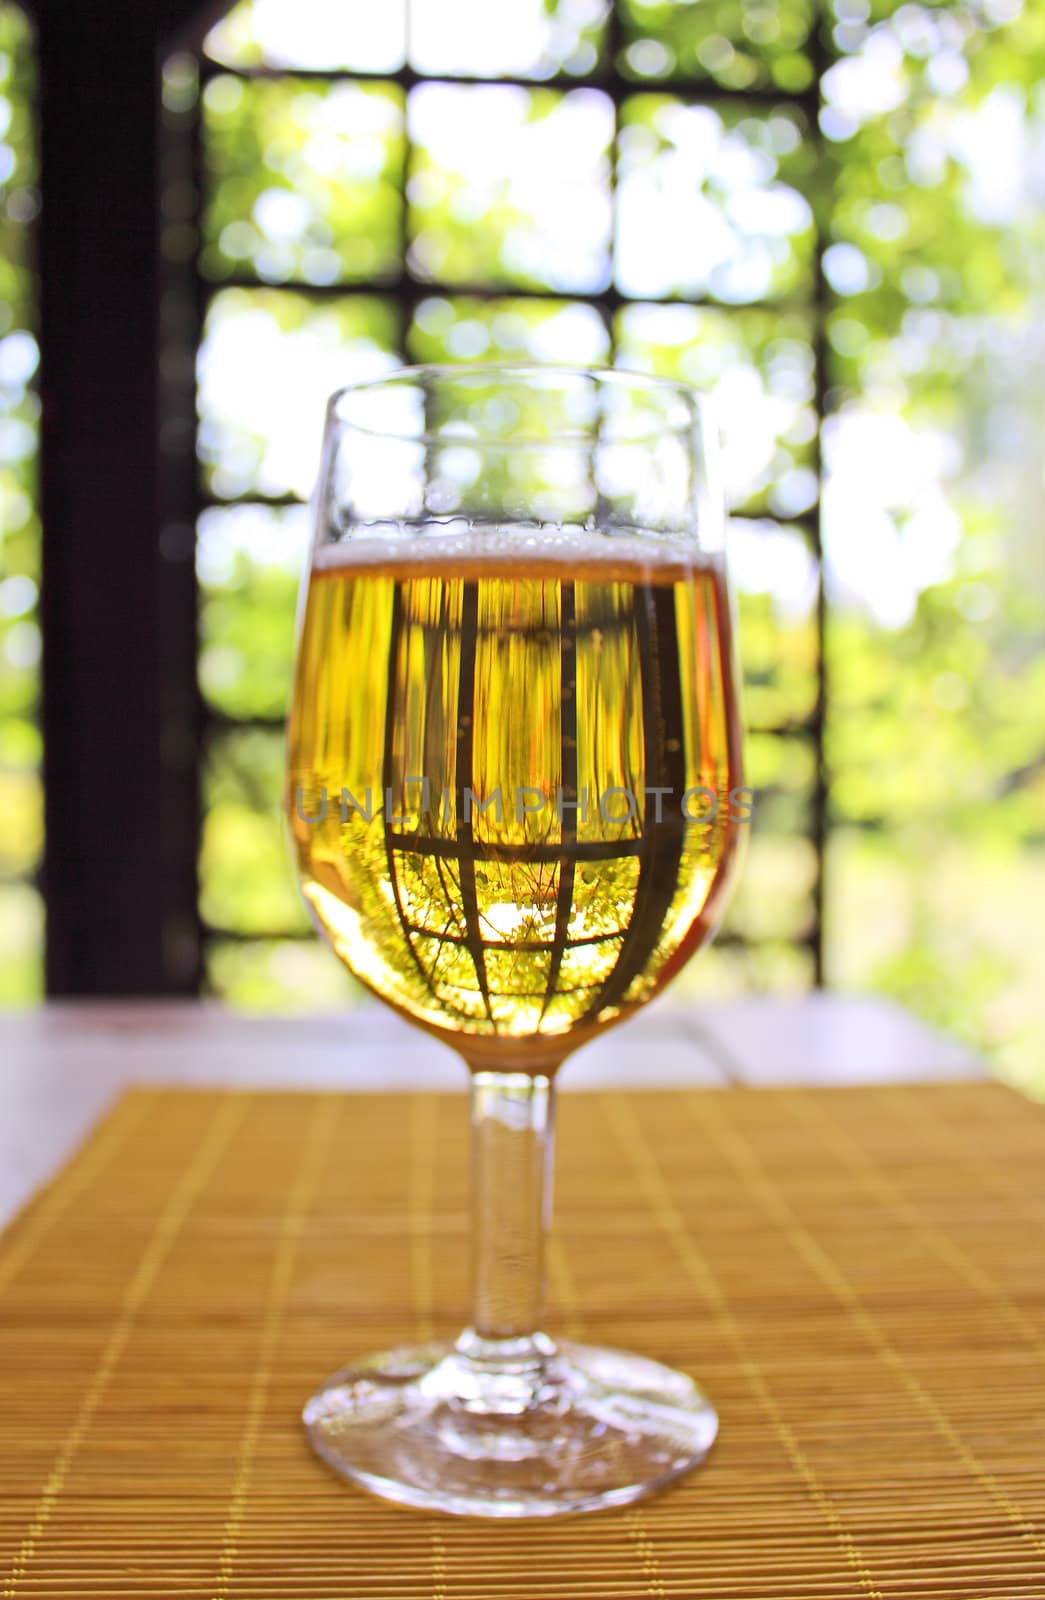 Glass of golden beer by piotrek73